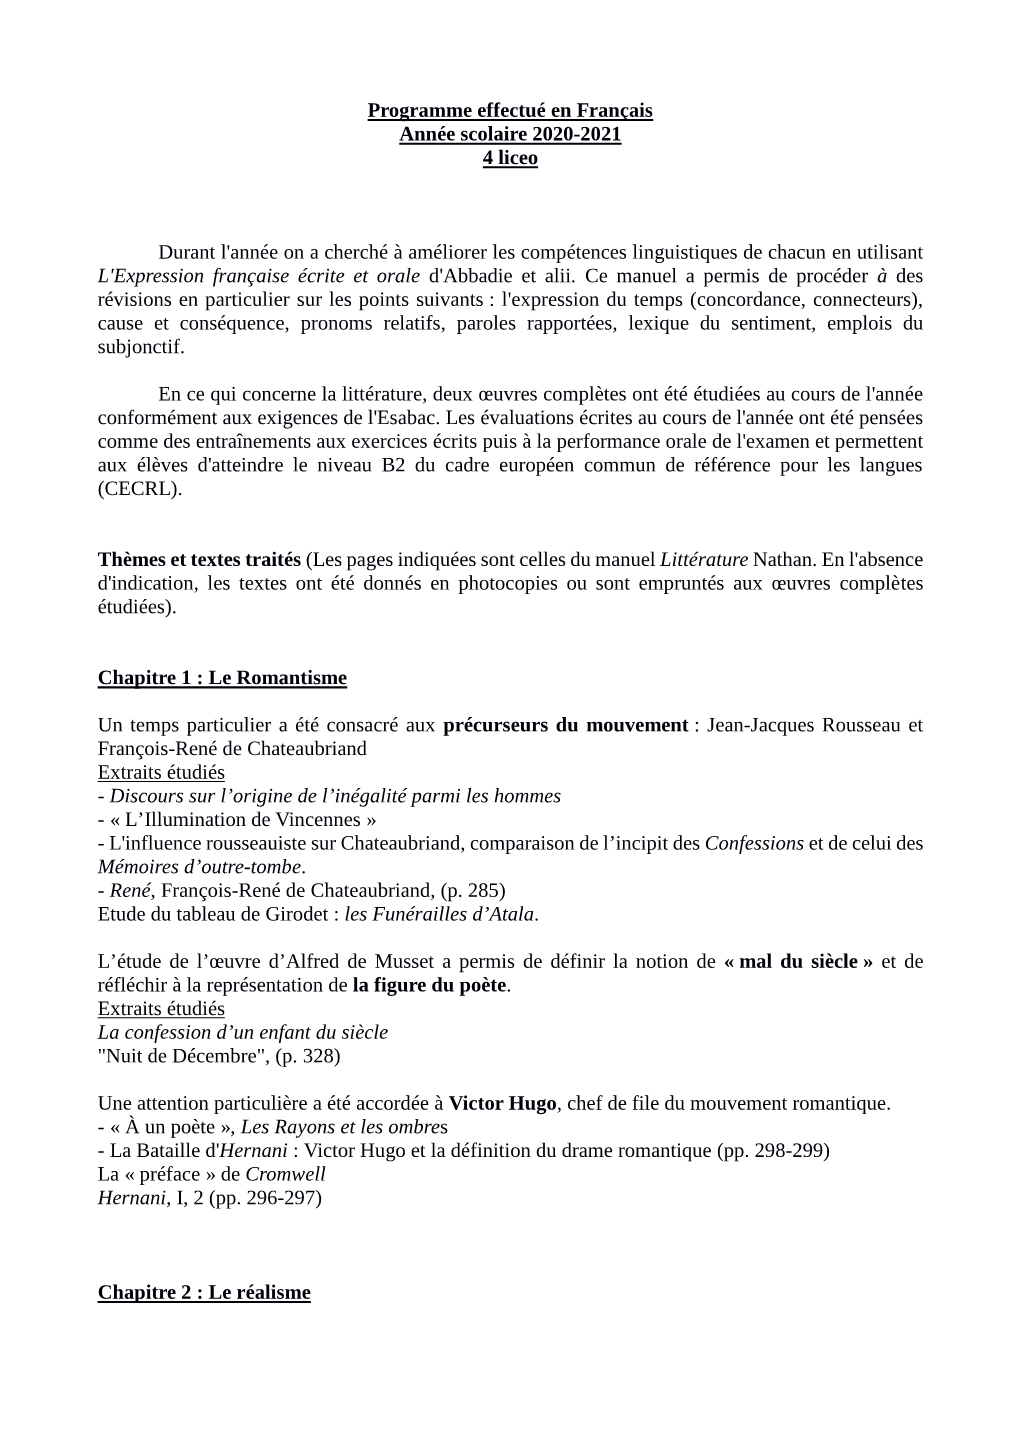 Programme Effectué En Français Année Scolaire 2020-2021 4 Liceo